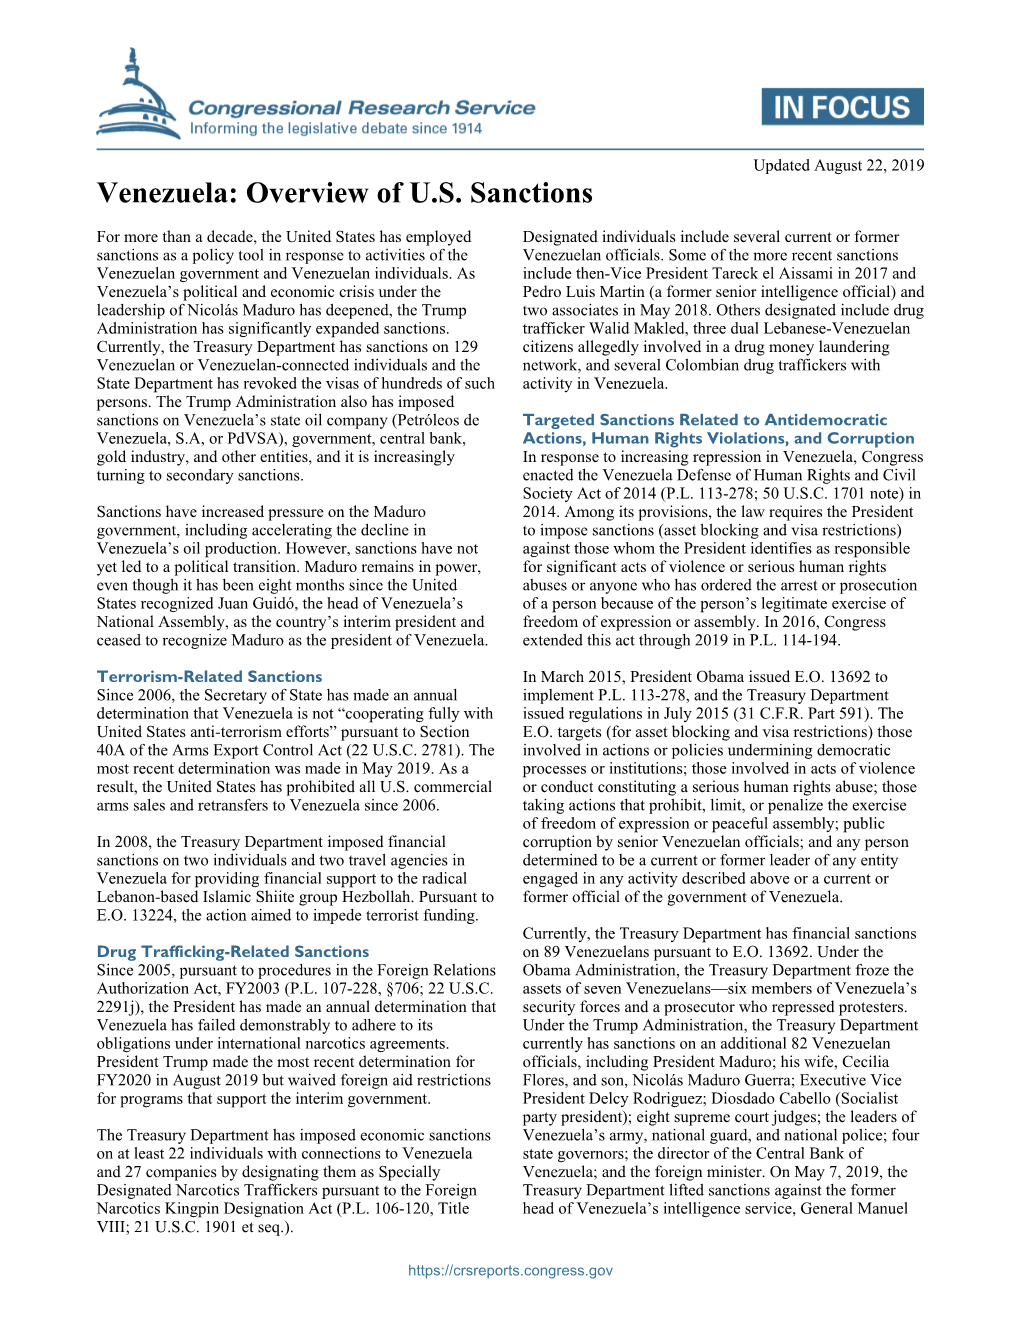 Venezuela: Overview of U.S